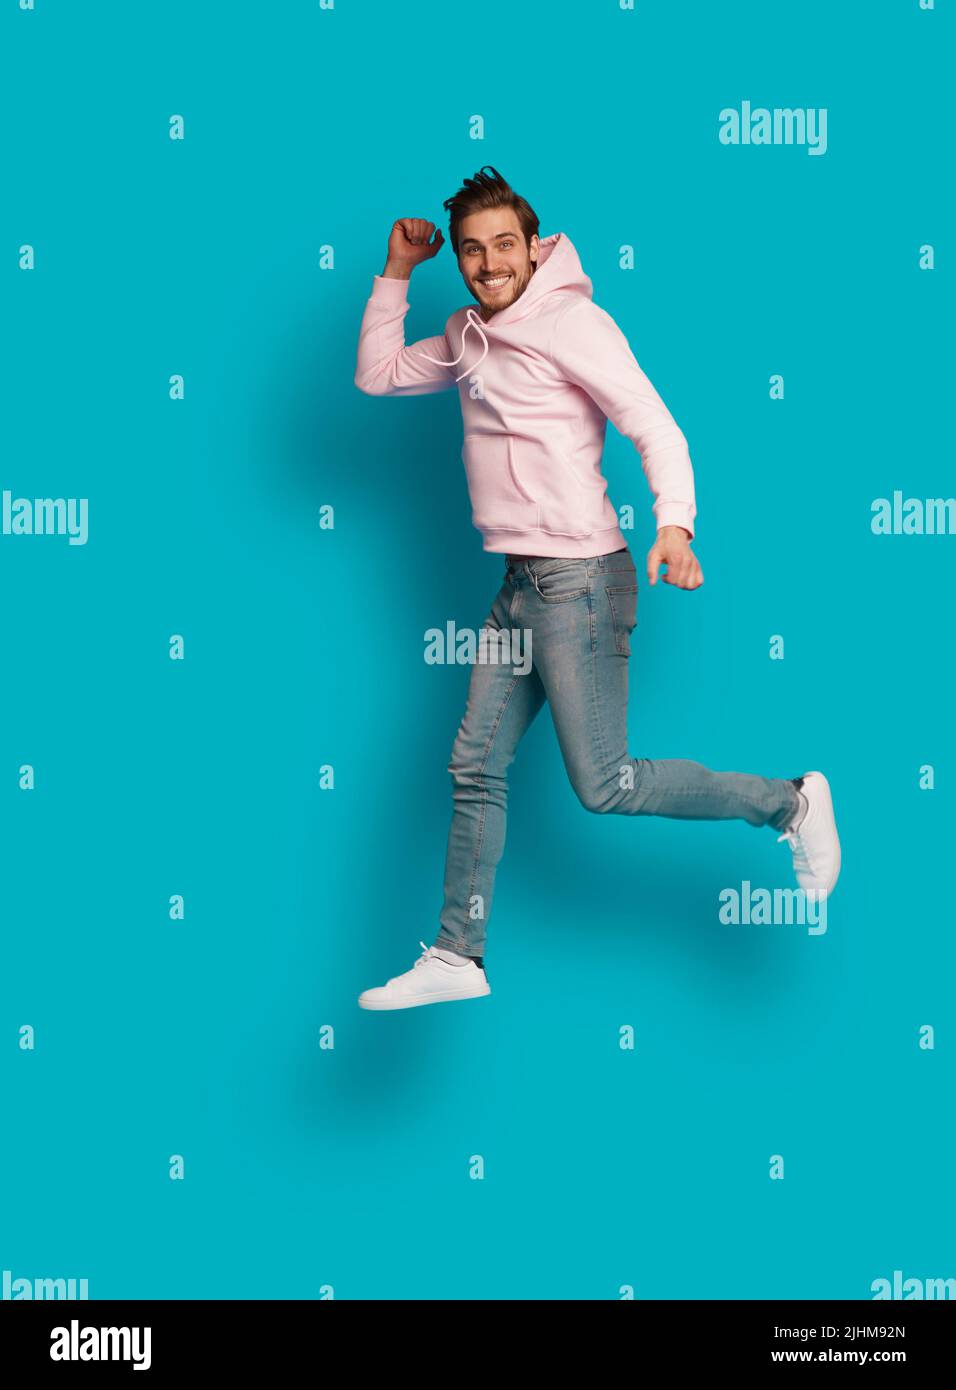 Foto a grandezza naturale di giovane felice eccitato sorridente positivo uomo che salta isolato su sfondo di colore azzurro chiaro Foto Stock